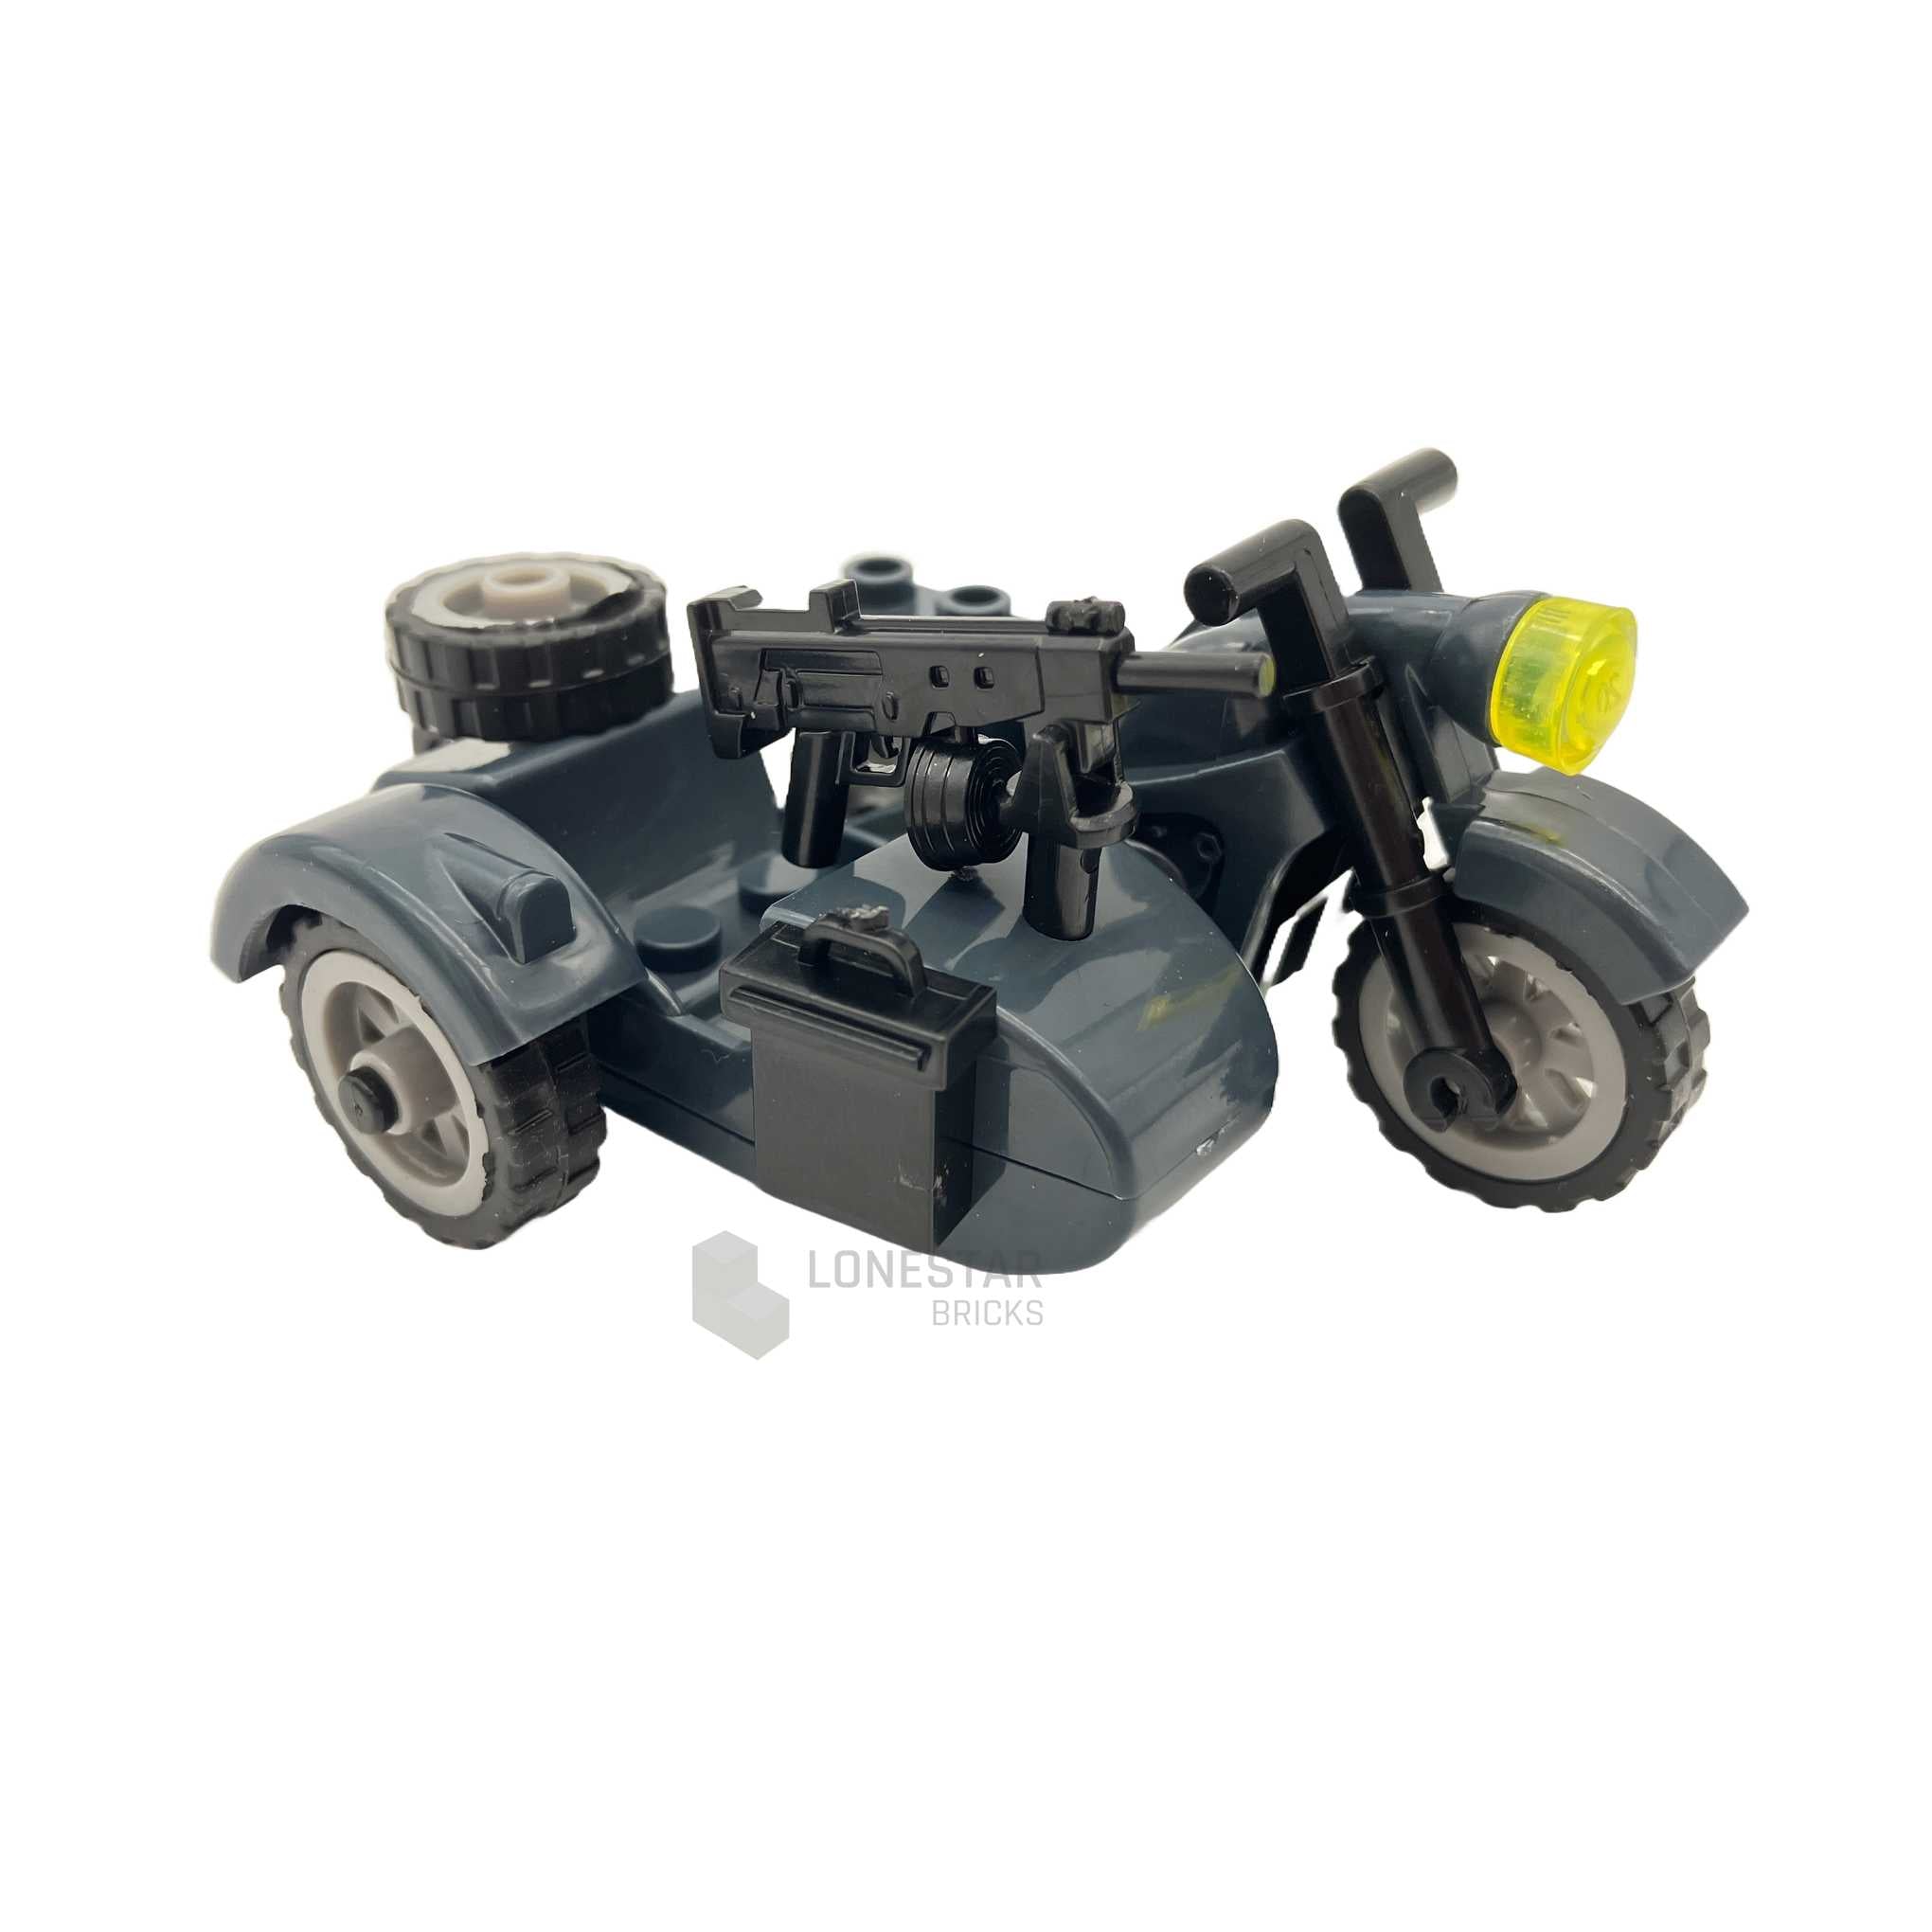 LB-70039 - Motorrad mit Beiwagen MG anthrazit (Lonestar Bricks)